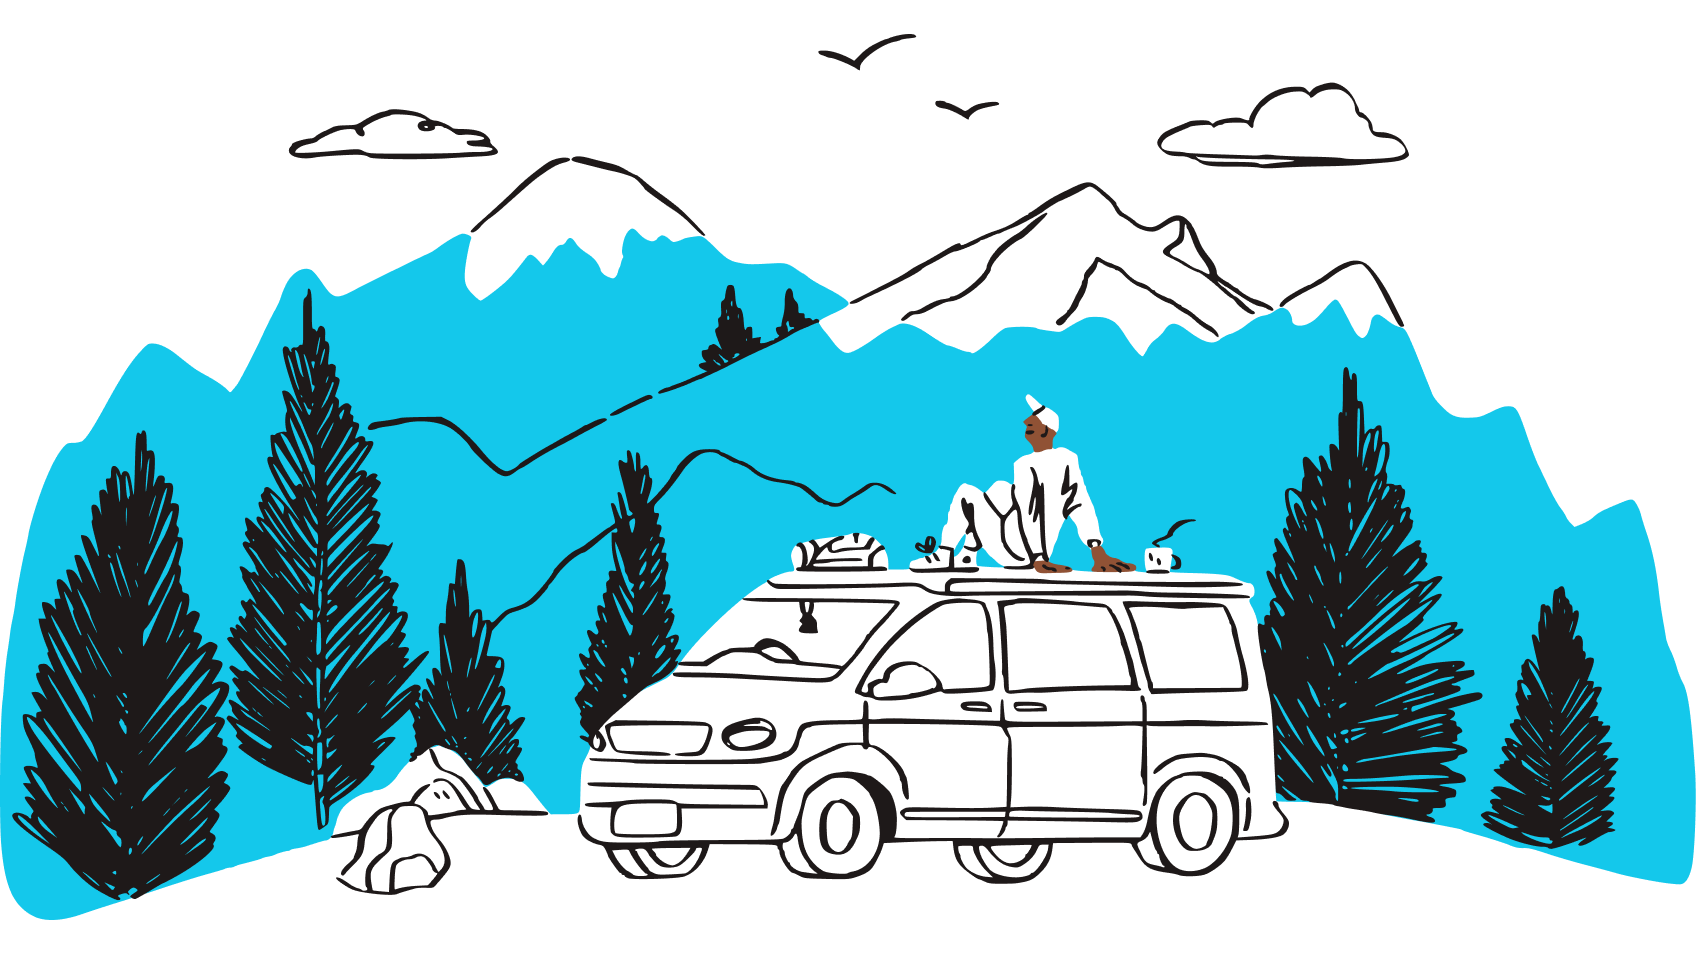 Зображення людини, яка сидить на даху автомобіля, милуючись видом на гірський хребет.